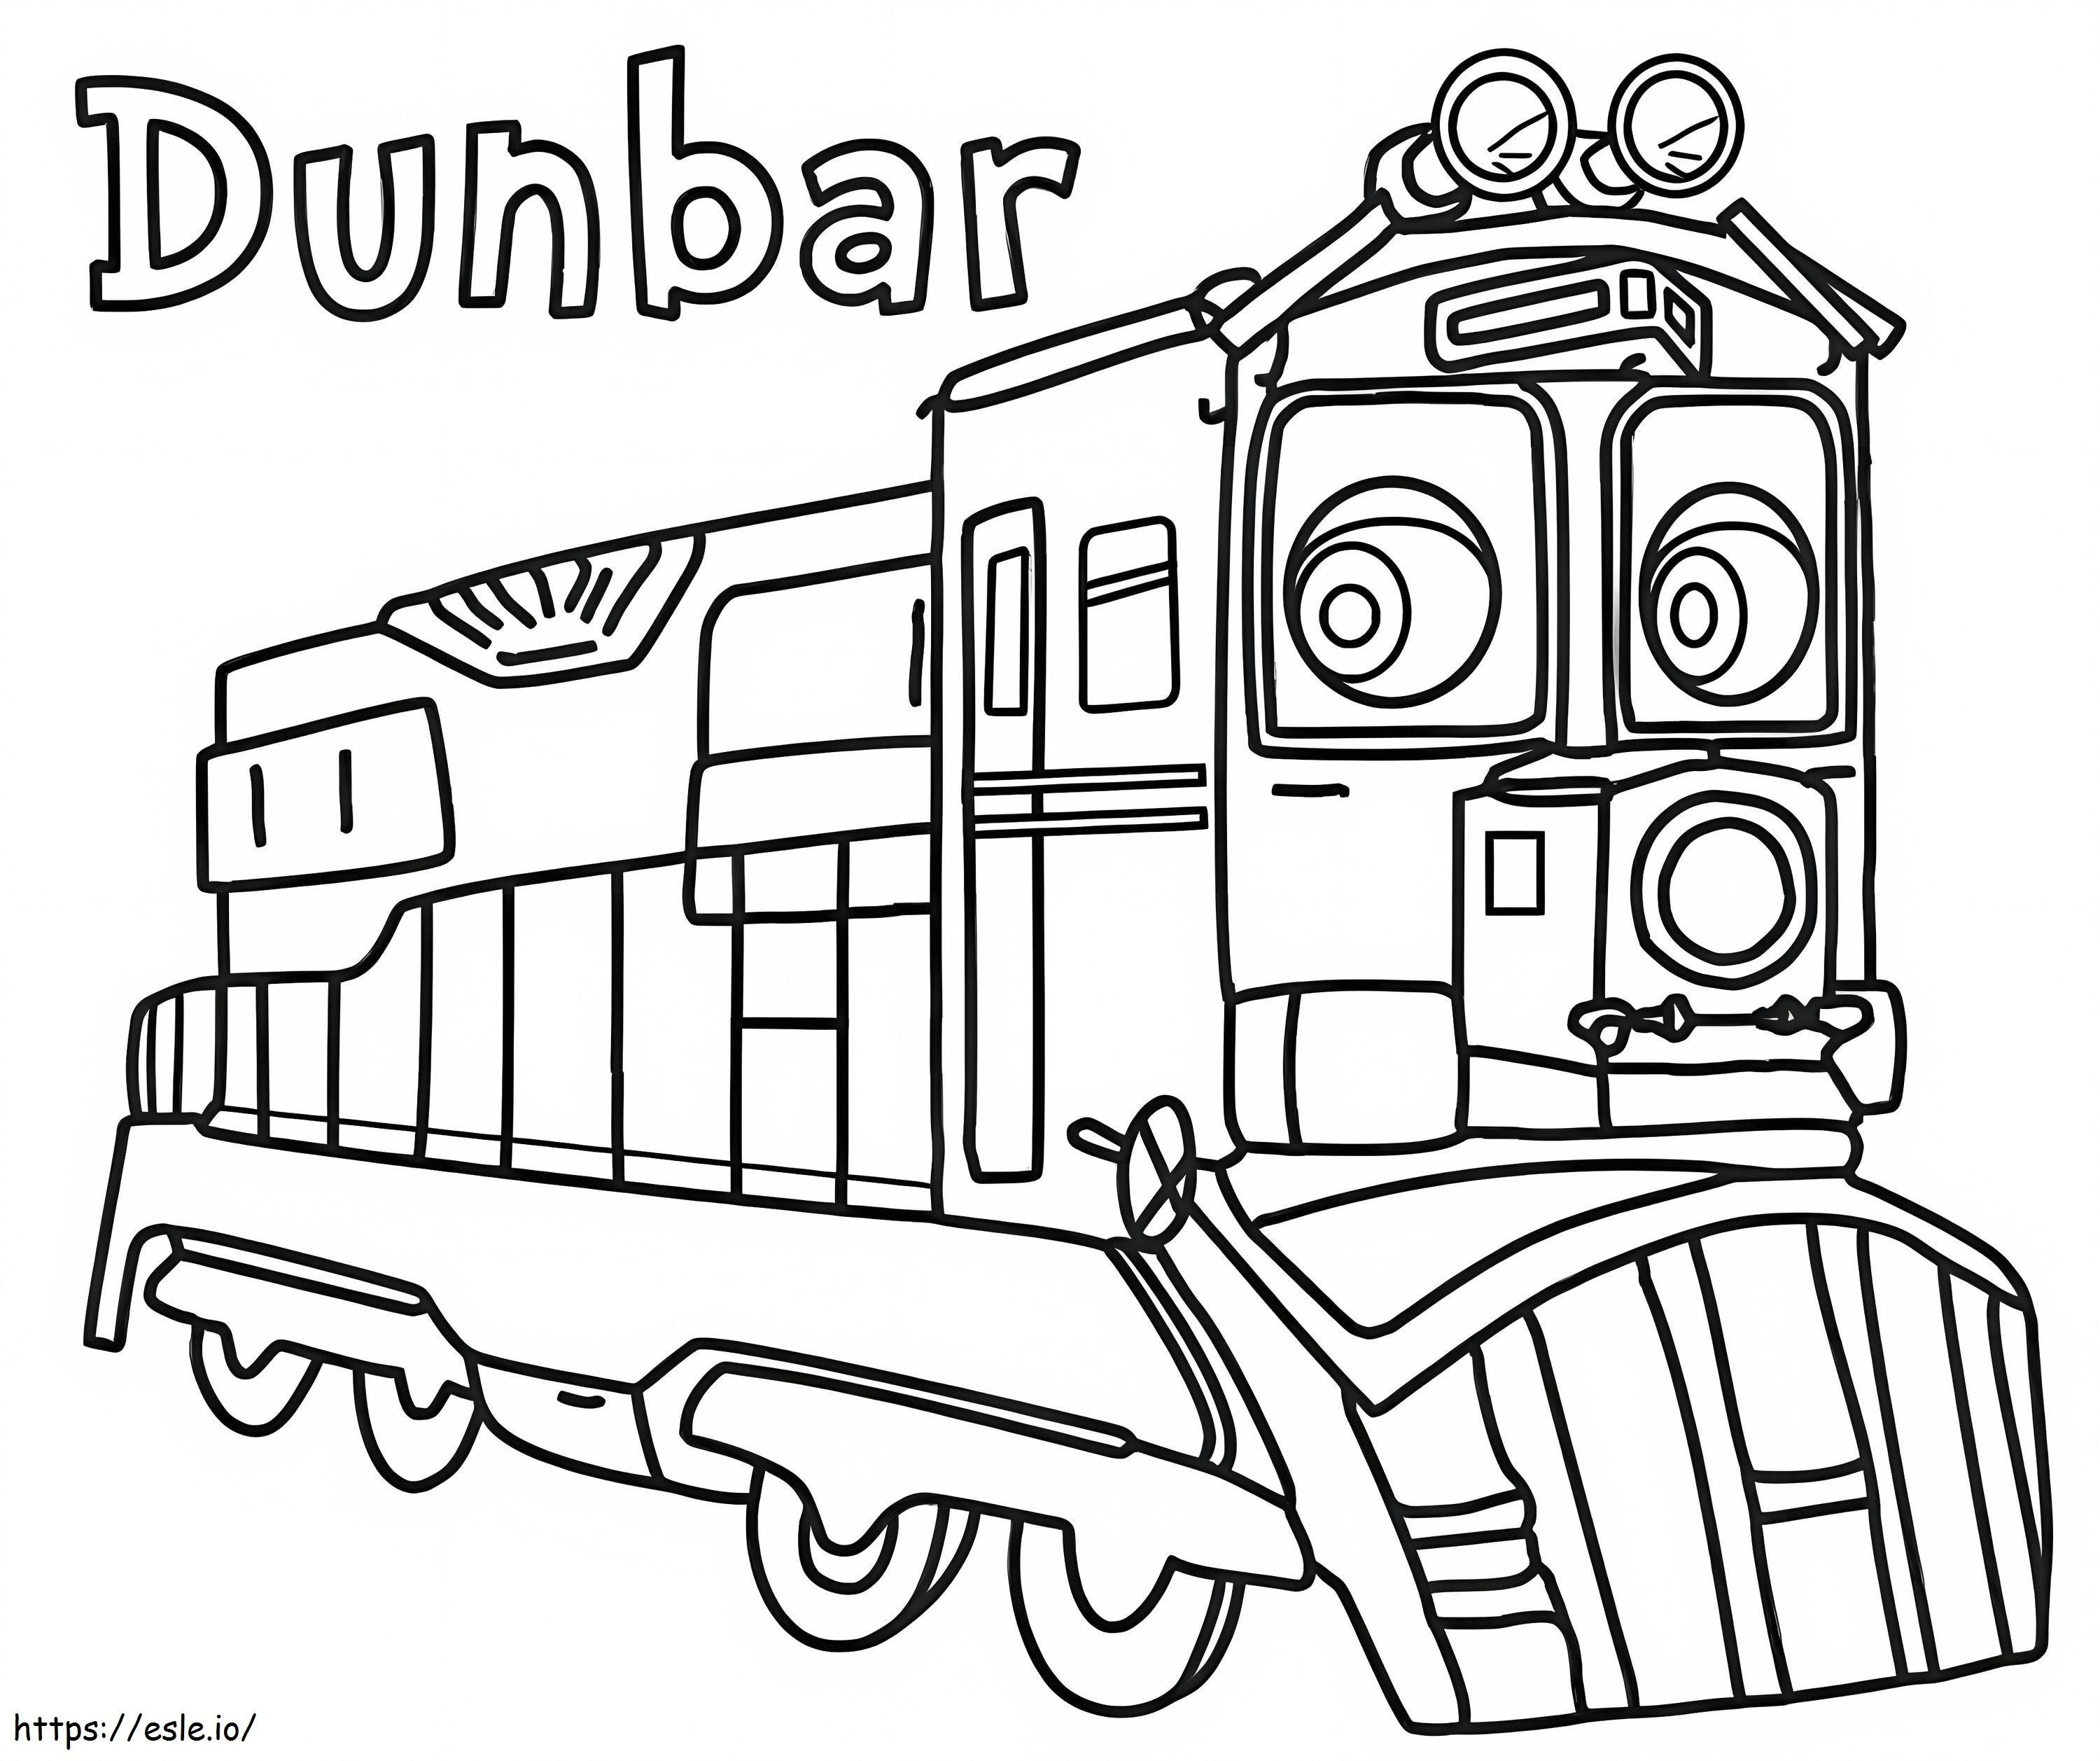 Dunbar De Chuggington para colorear